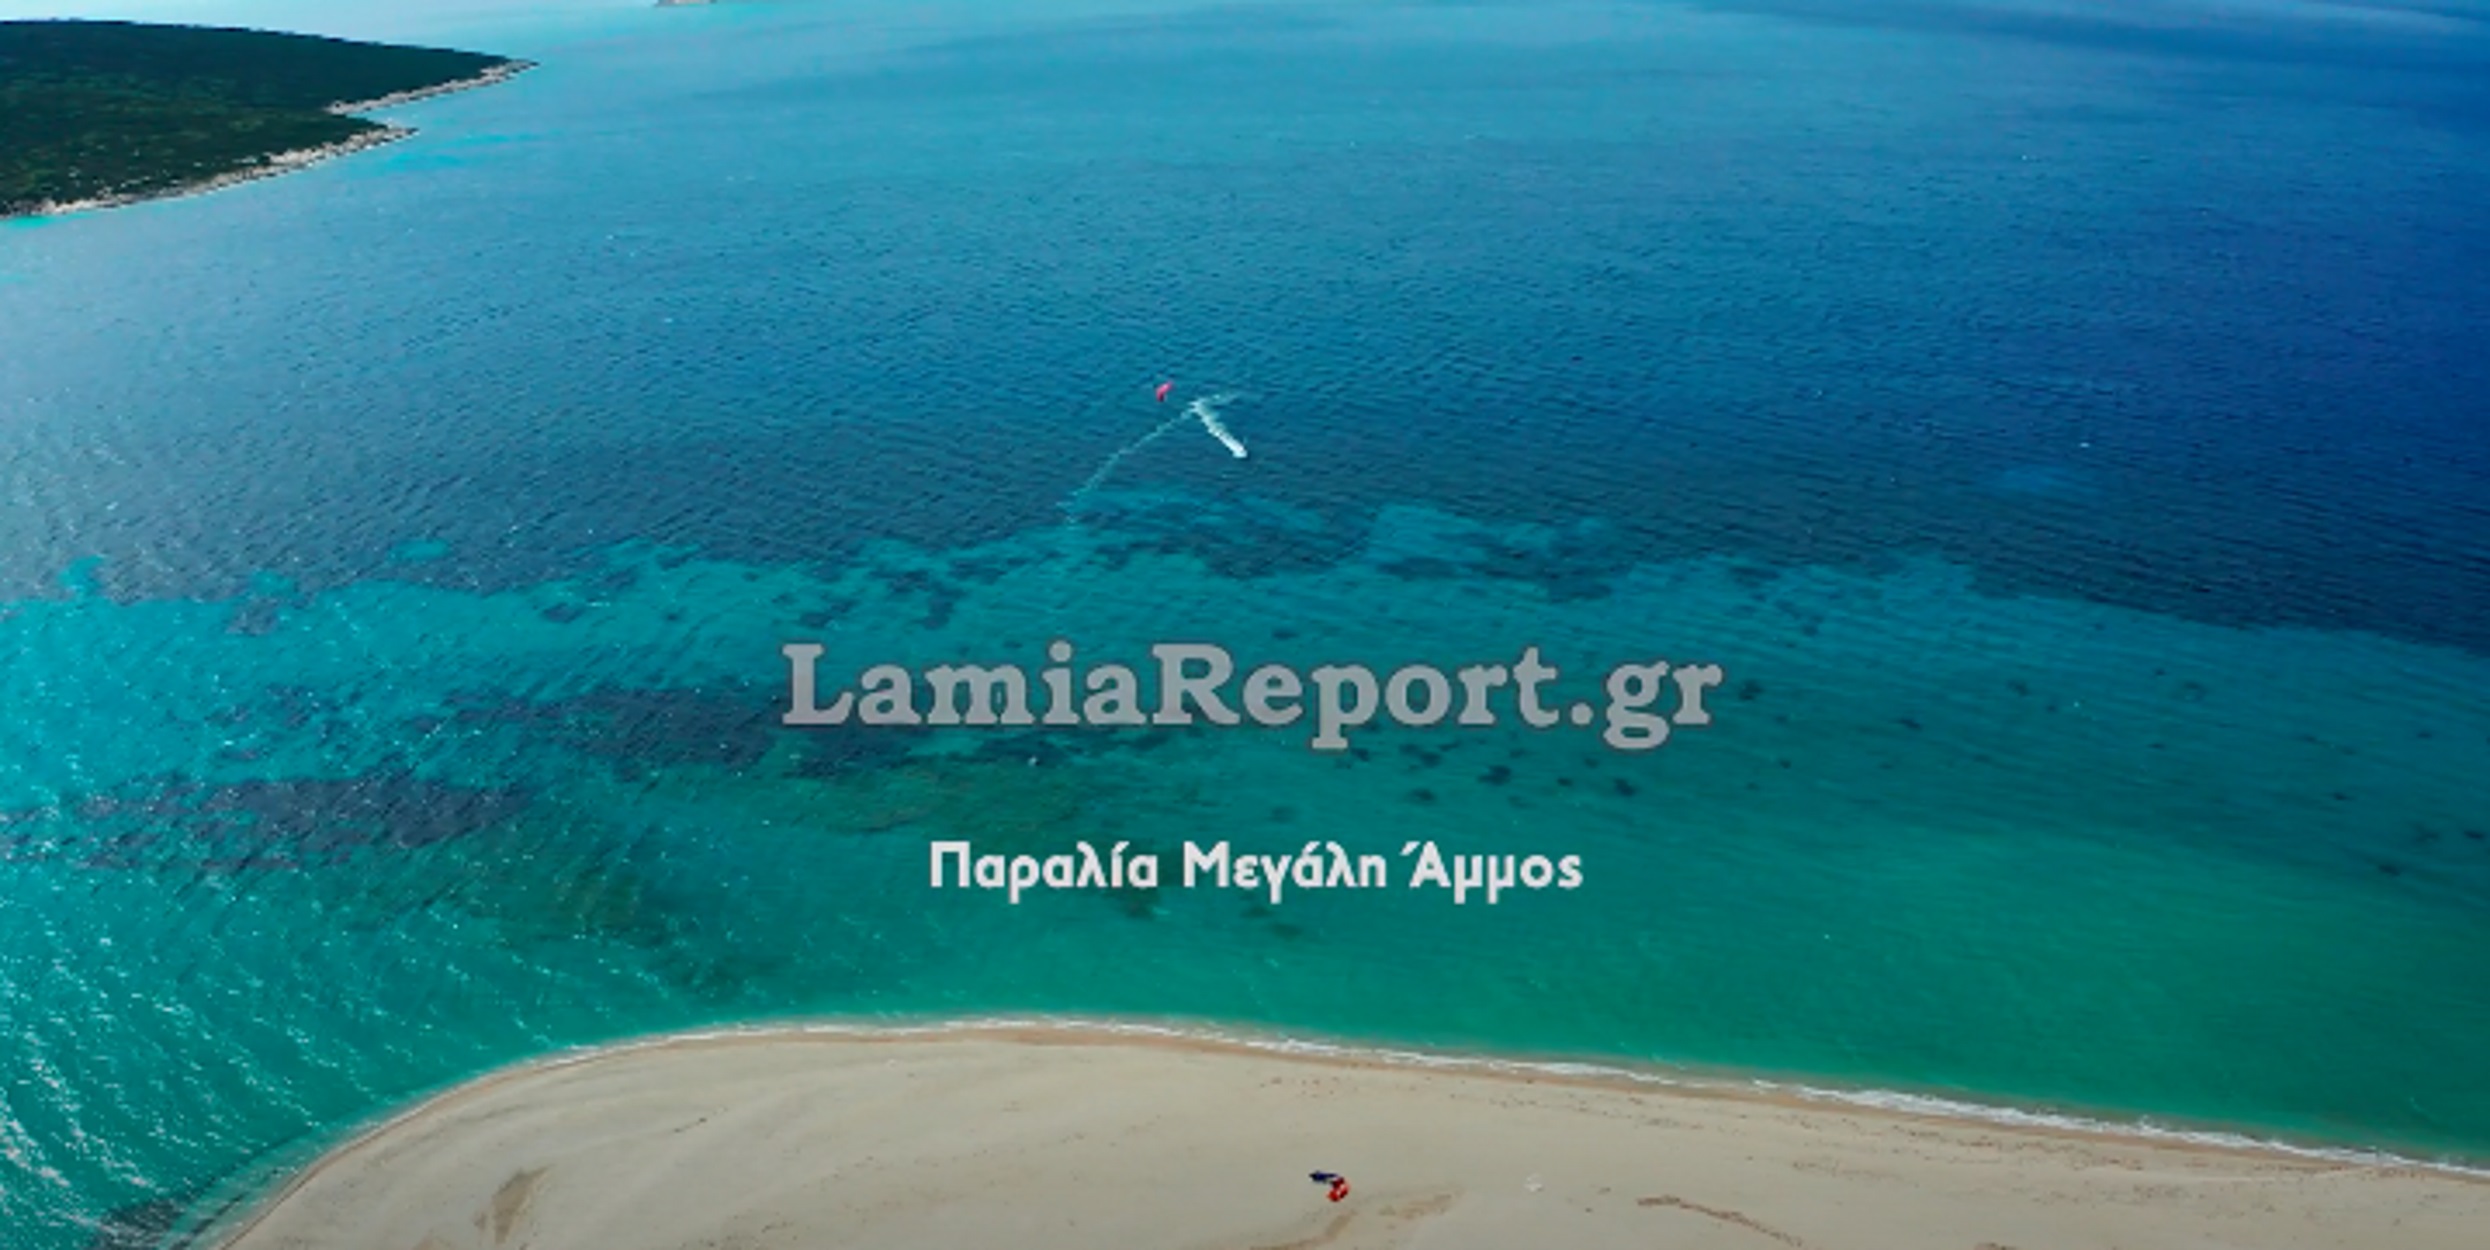 Αυτή είναι η μαγική παραλία της Εύβοιας που ταξιδεύει την Ελλάδα σε όλο τον κόσμο! (video)